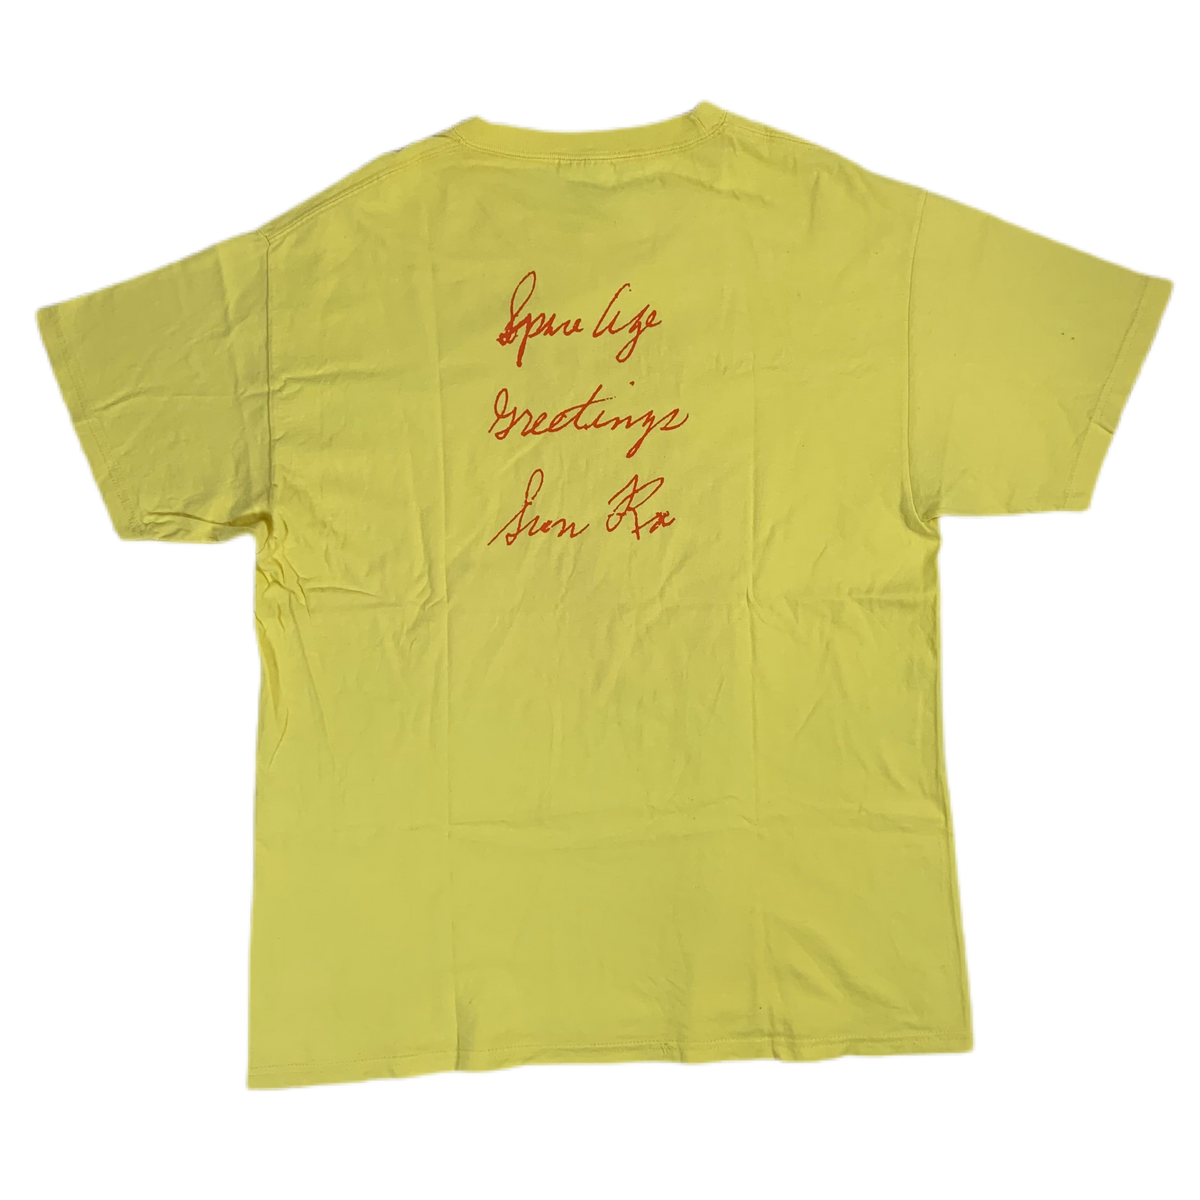 Vintage Sun Ra &quot;RE/Search&quot; T-Shirt